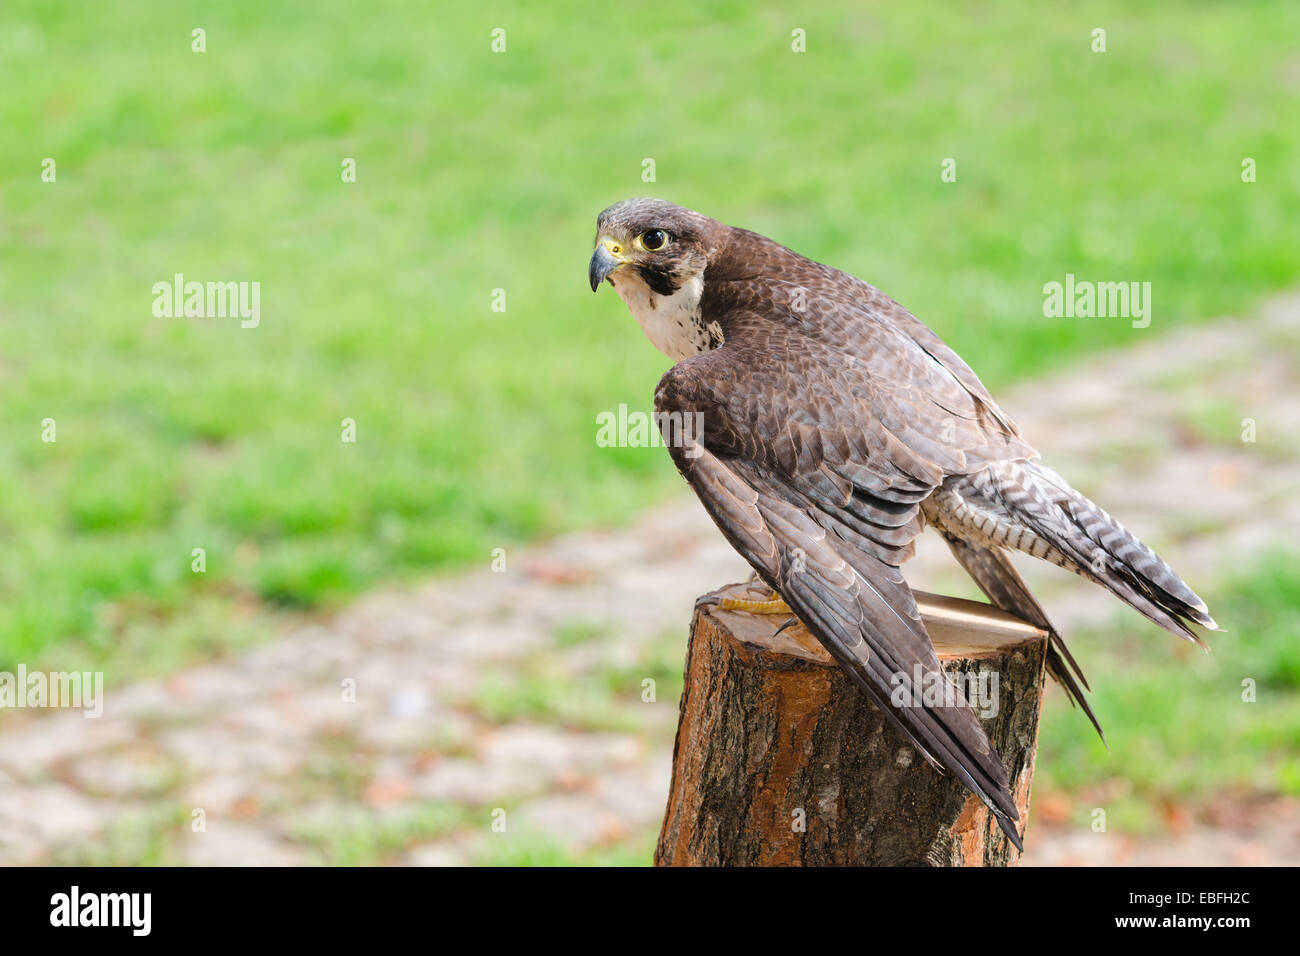 Wilde Falken Raubtier Hawk schnellster Raptor Raubvogel Baumstumpf gehockt und breiteten ihre Flügel gegen grünen Rasen mit gratis-Exemplar Stockfoto